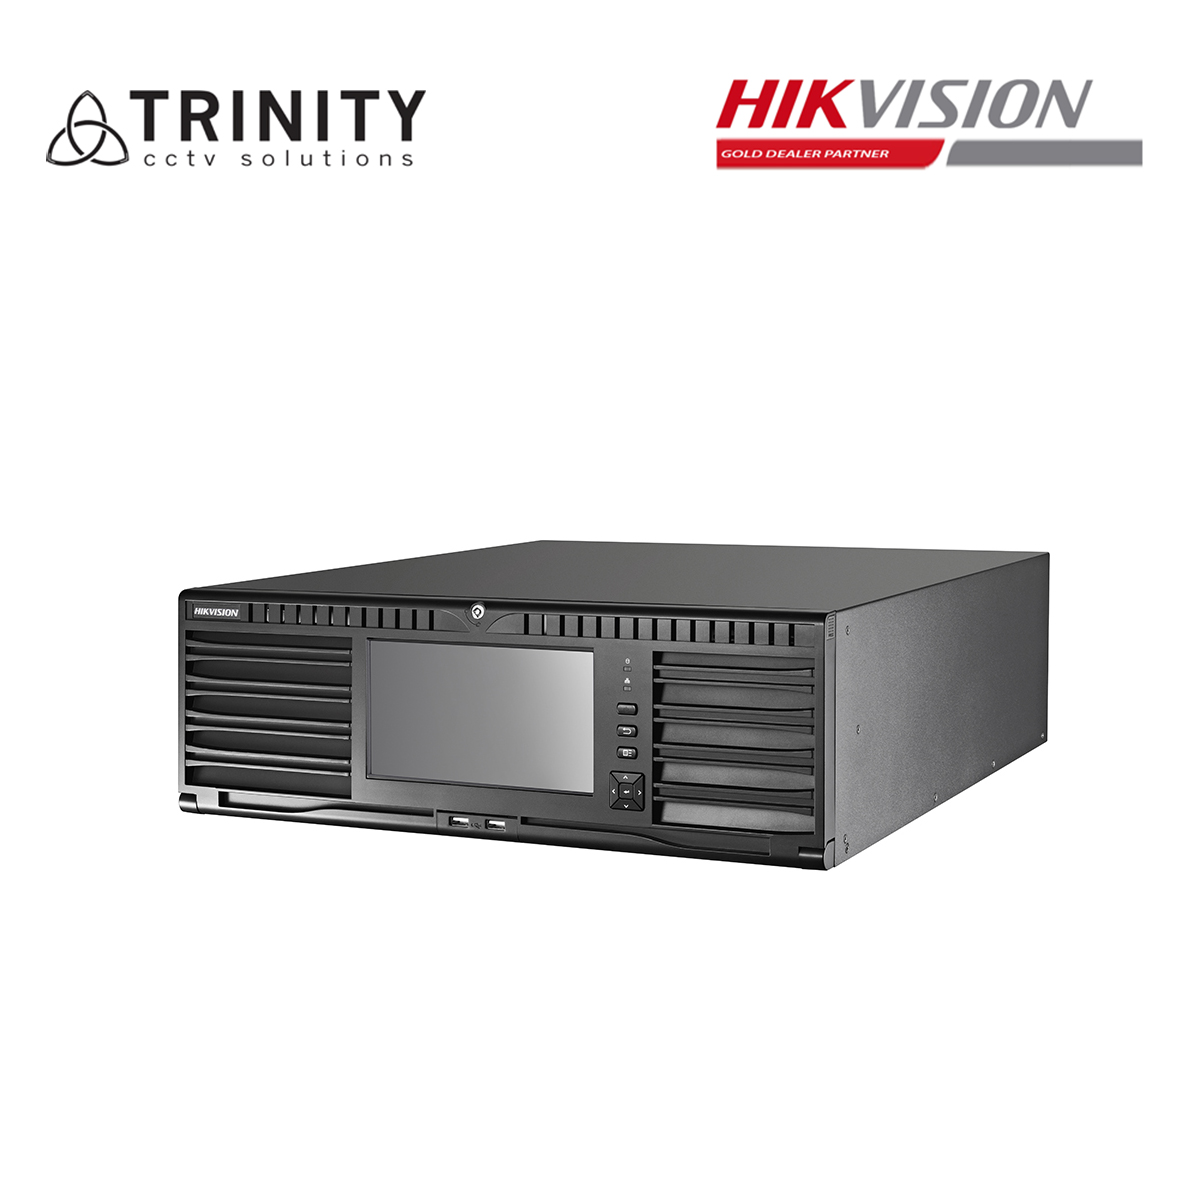 hikvision 256 channel nvr